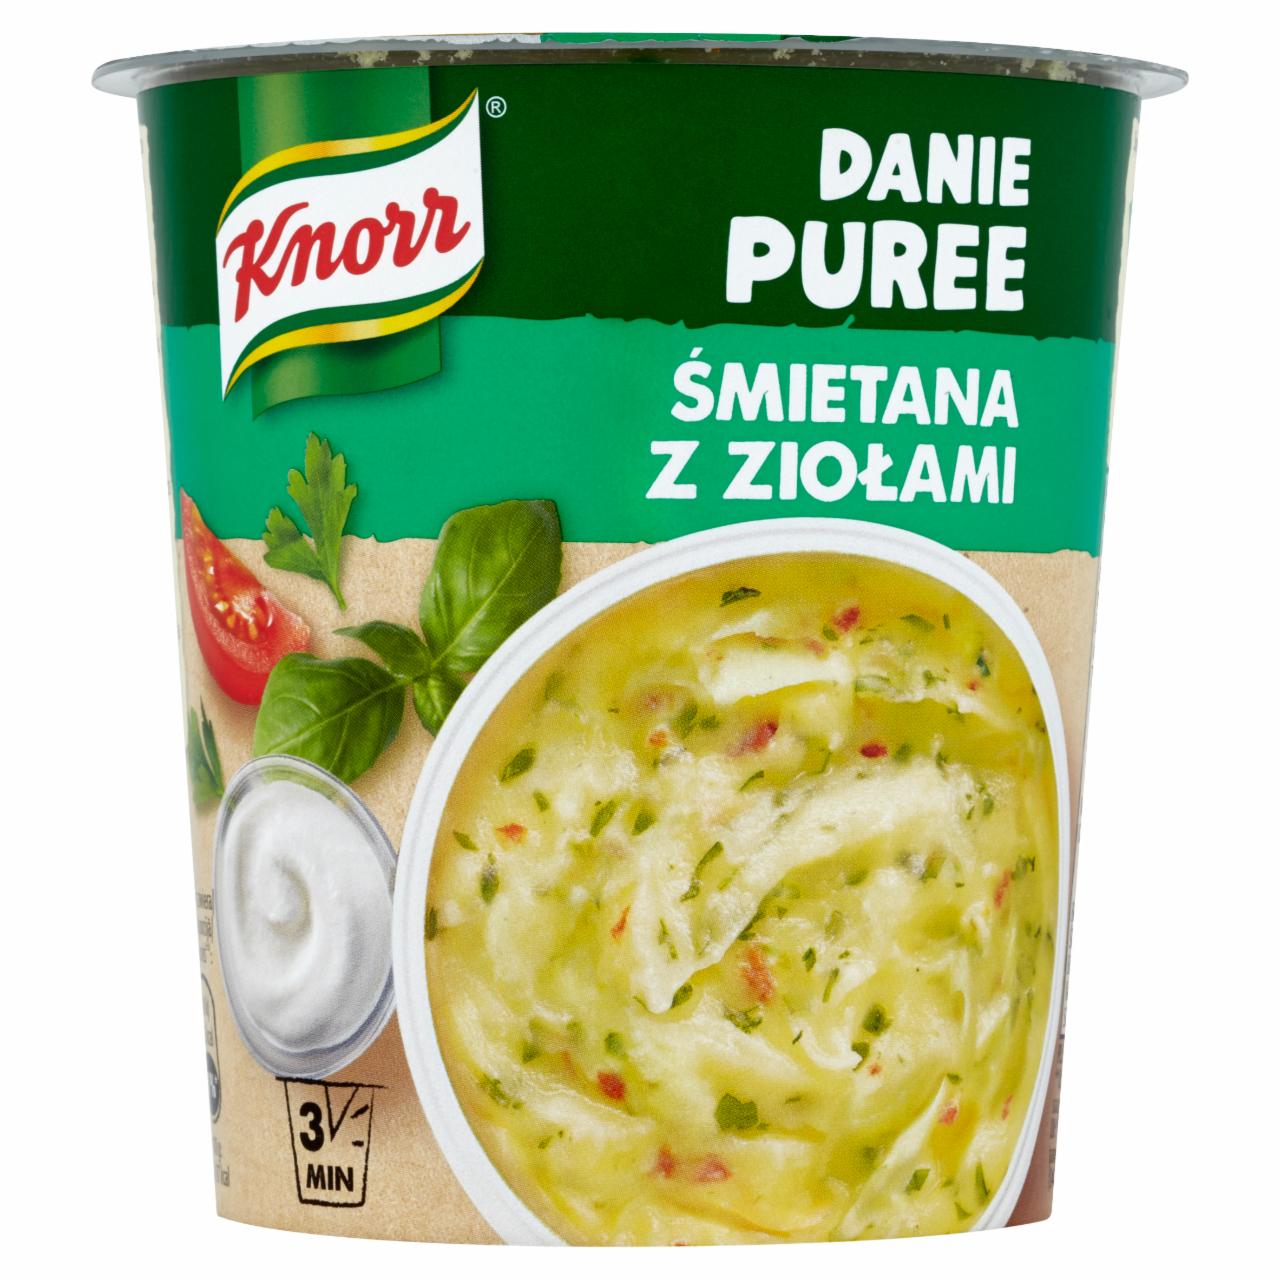 Zdjęcia - Knorr Danie Puree Śmietana z ziołami 48 g